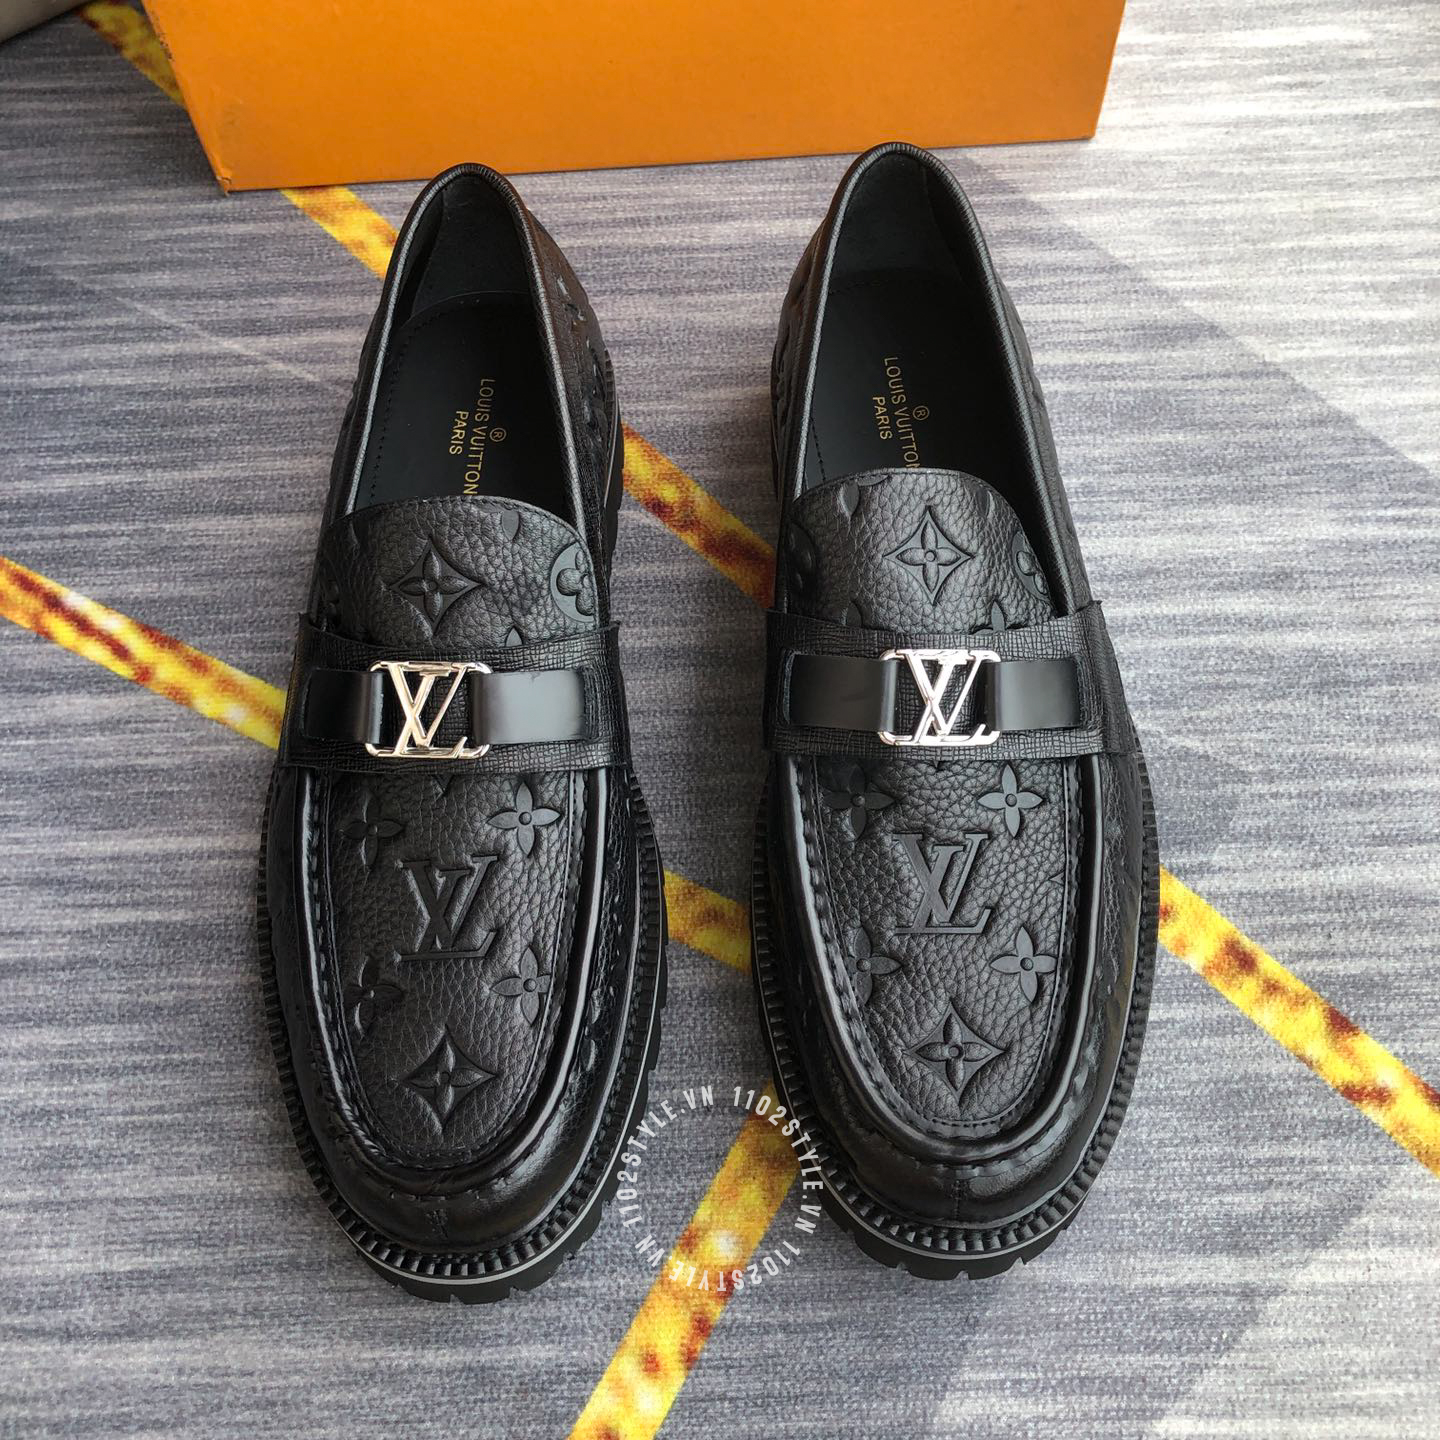 Giày lười Louis Vuitton nam giá rẻ MS221641 hàng hiệu like chính hãng